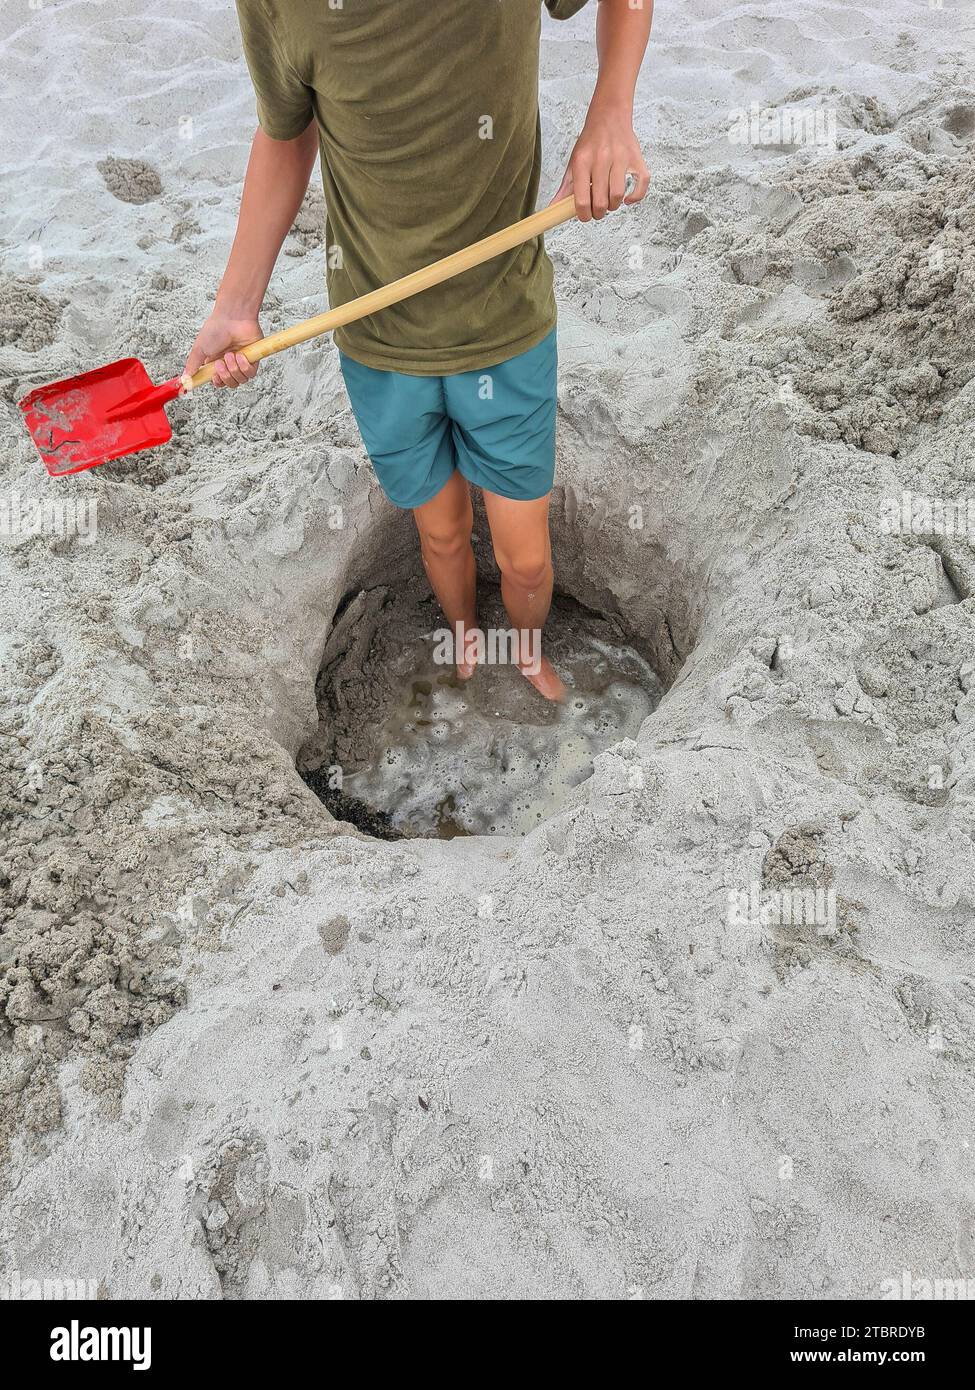 Deutschland, Mecklenburg-Vorpommern, Halbinsel Fischland-Darß-Zingst, Prerow, ein Teenager steht in einem Sandloch am Strand mit einer Schaufel in der Hand Stockfoto